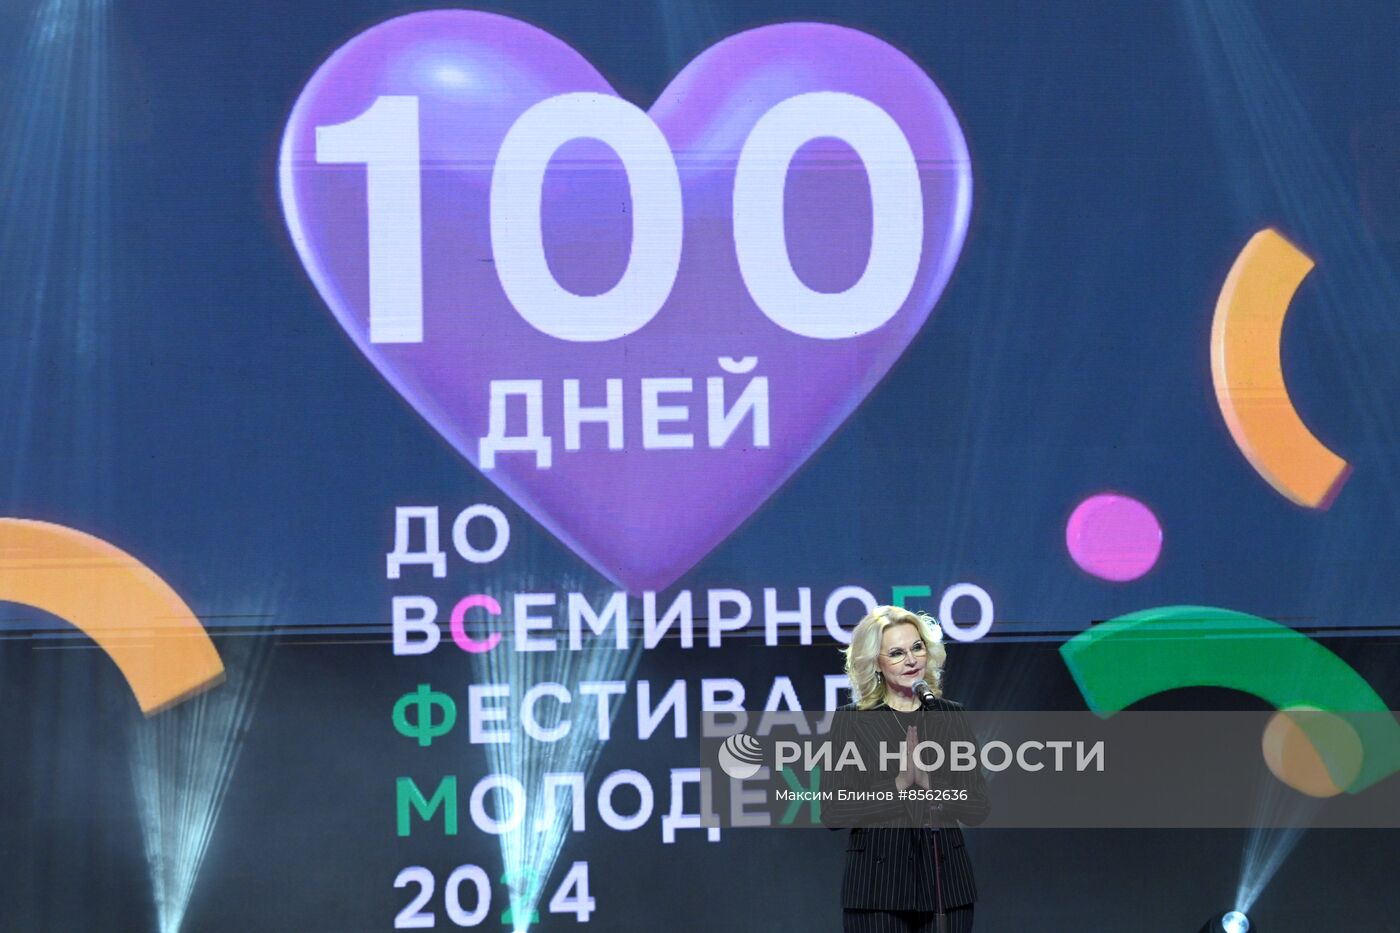 Выставка "Россия". "100 дней до ВФМ"